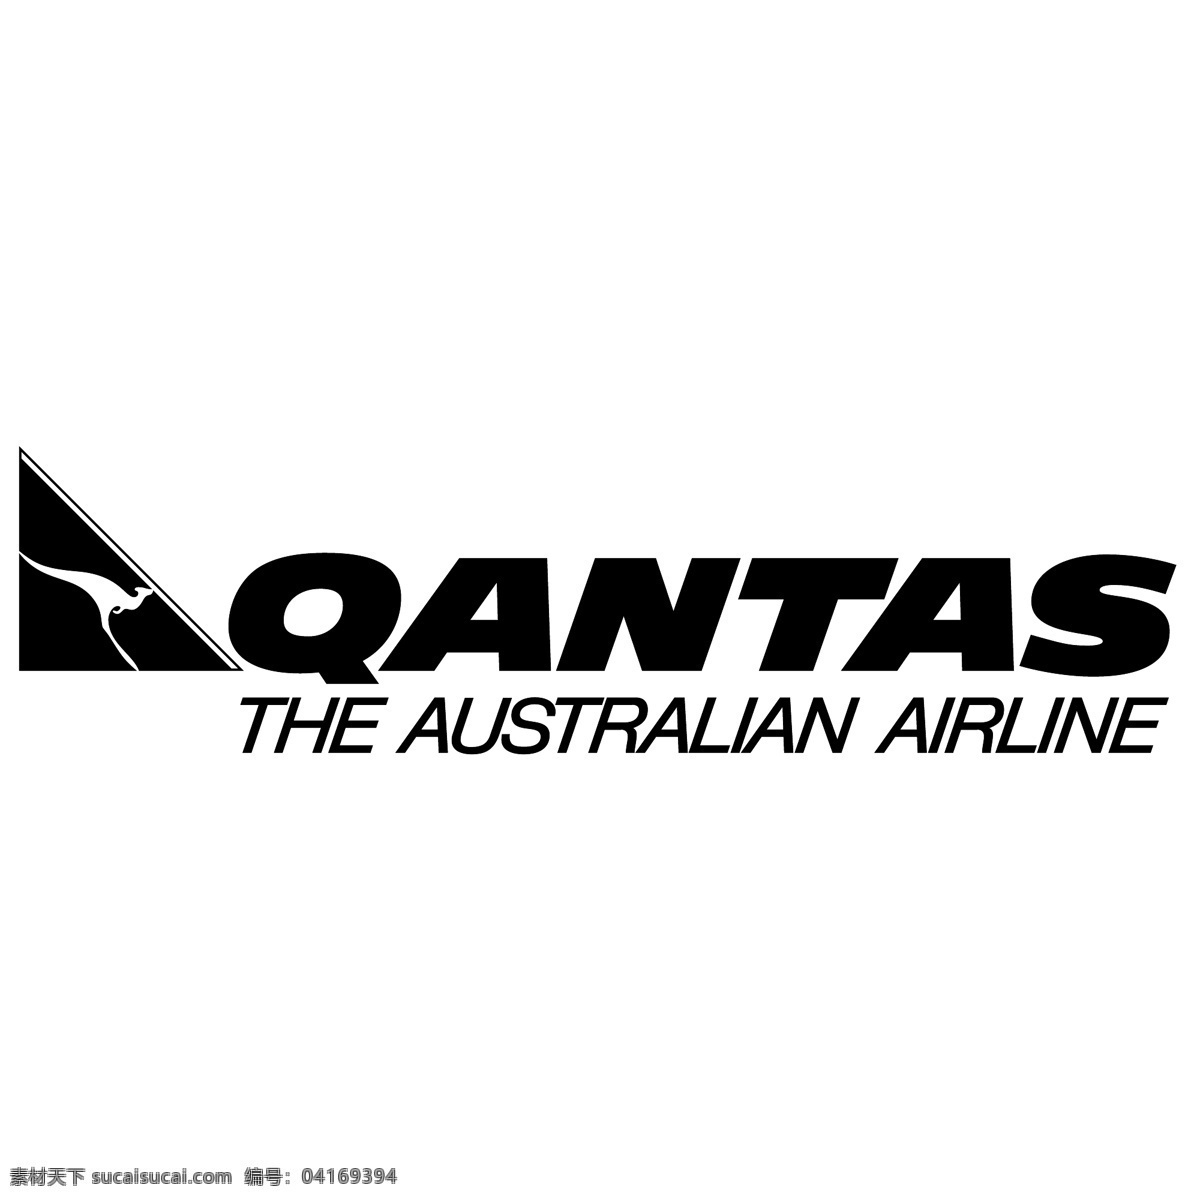 澳洲 航空公司 澳航 免费 标志 澳大利亚 psd源文件 logo设计